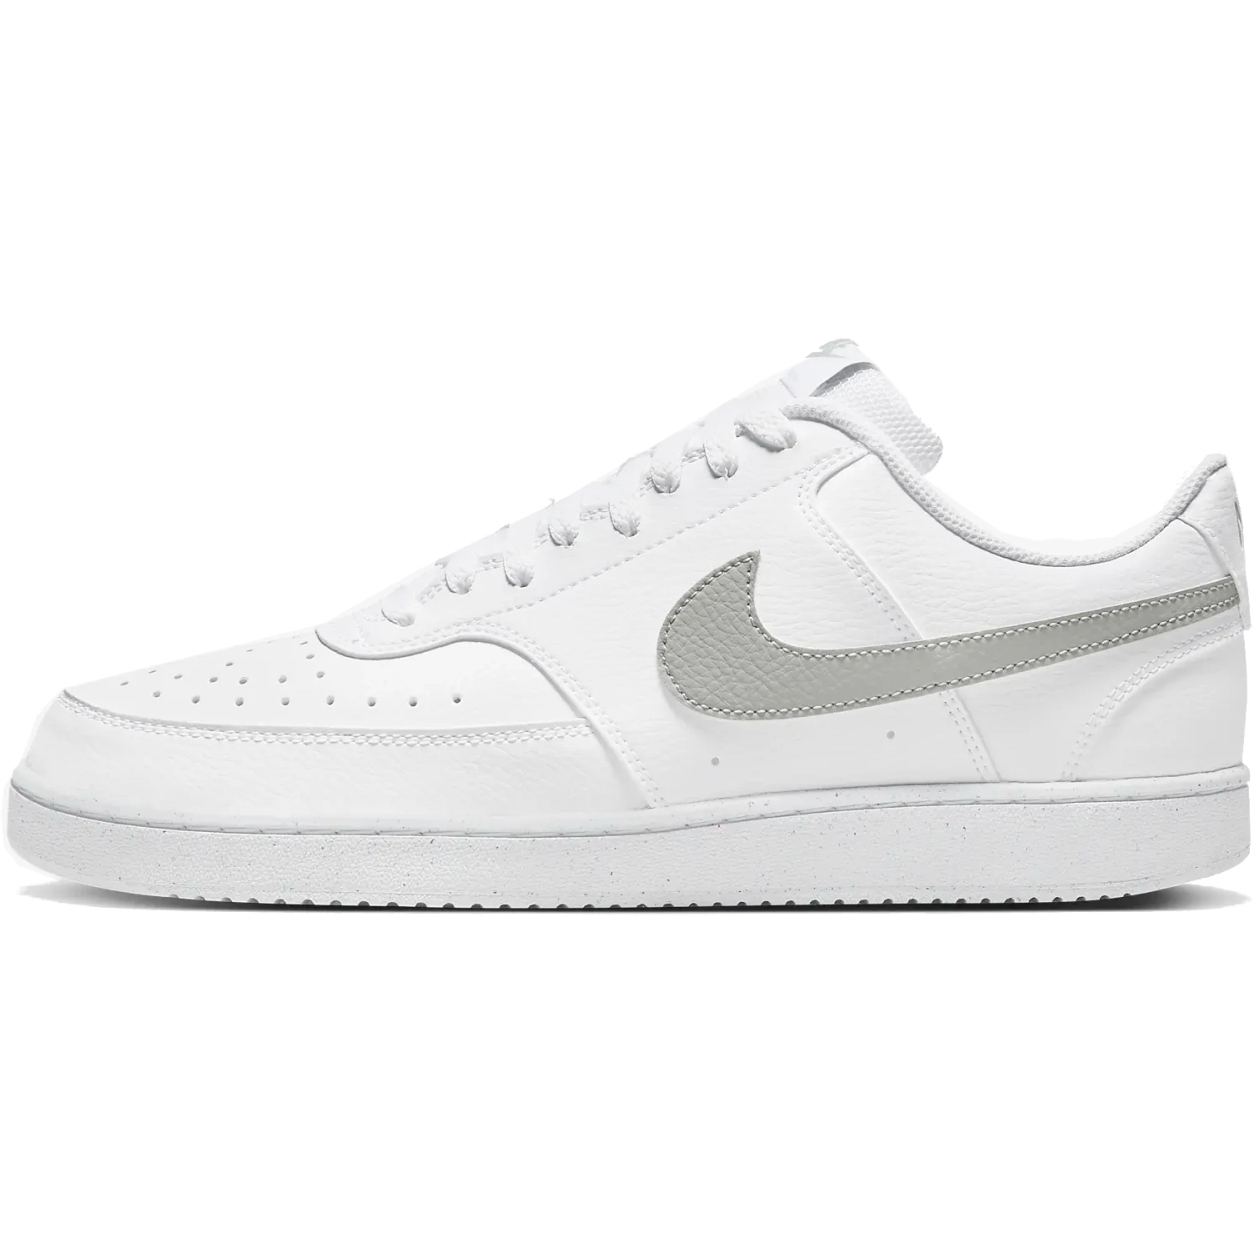 Produktbild von Nike Court Vision Low Better Schuhe Herren - white/lite smoke grey-white DH2987-112